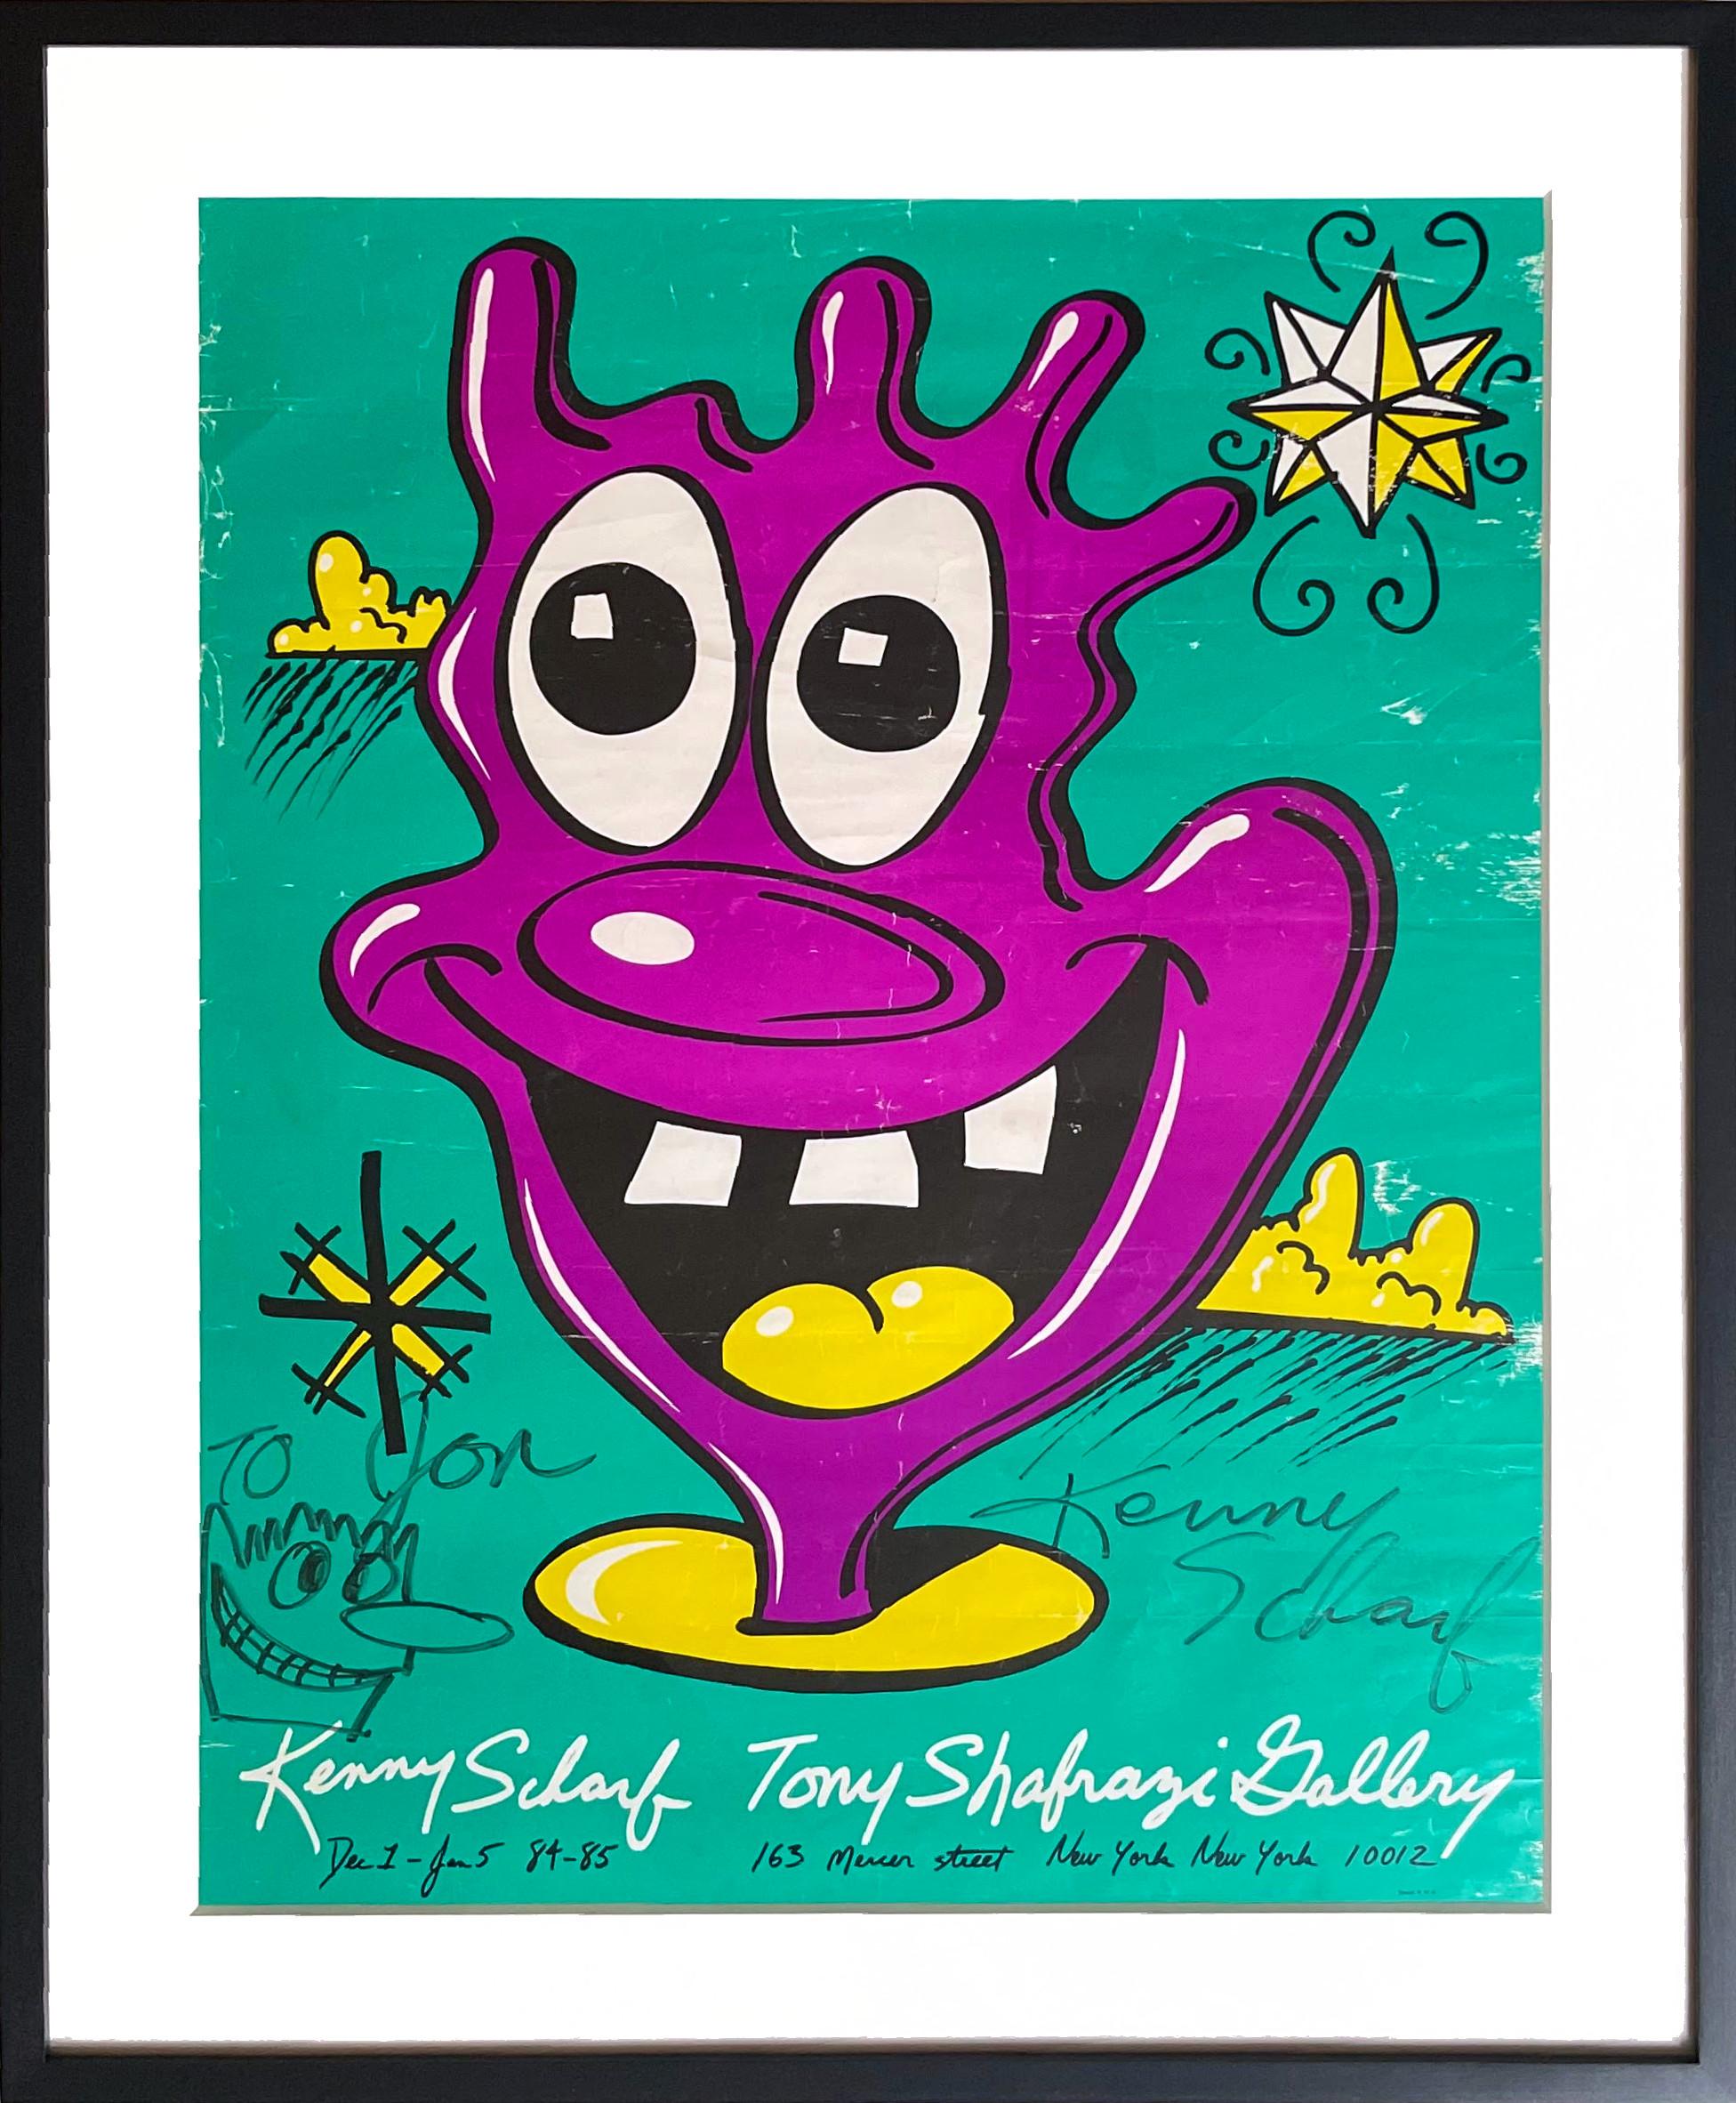 dessin unique sur l'affiche de Tony Shafrazi, signé et inscrit au petit ami de Warhol